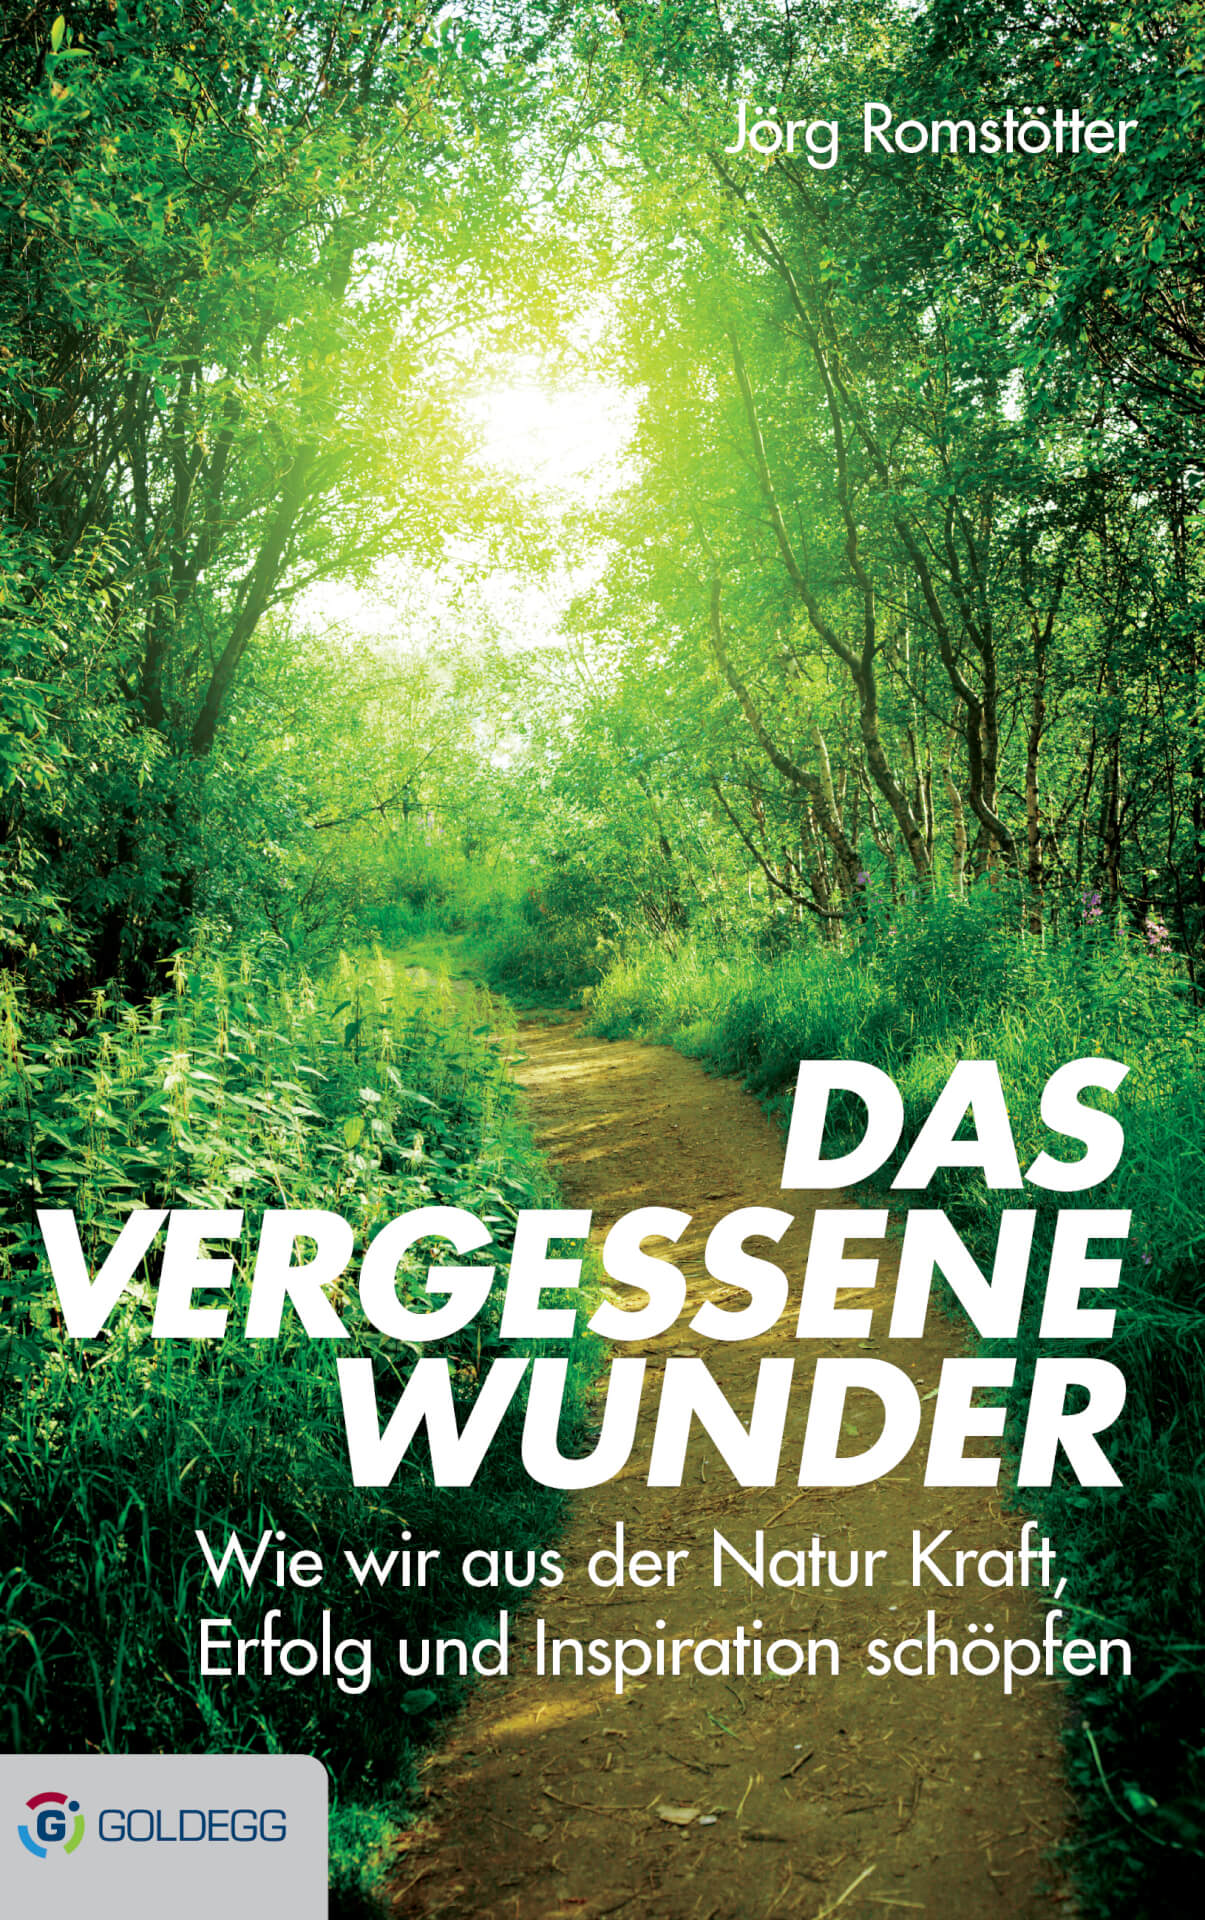 Ein Buchcover mit dem Titel "Das vergessene Wunder" von Jörg Romstötter, das einen grünen Waldweg zeigt, der von Sonnenlicht erhellt wird, auf dem man fast die Stimme von